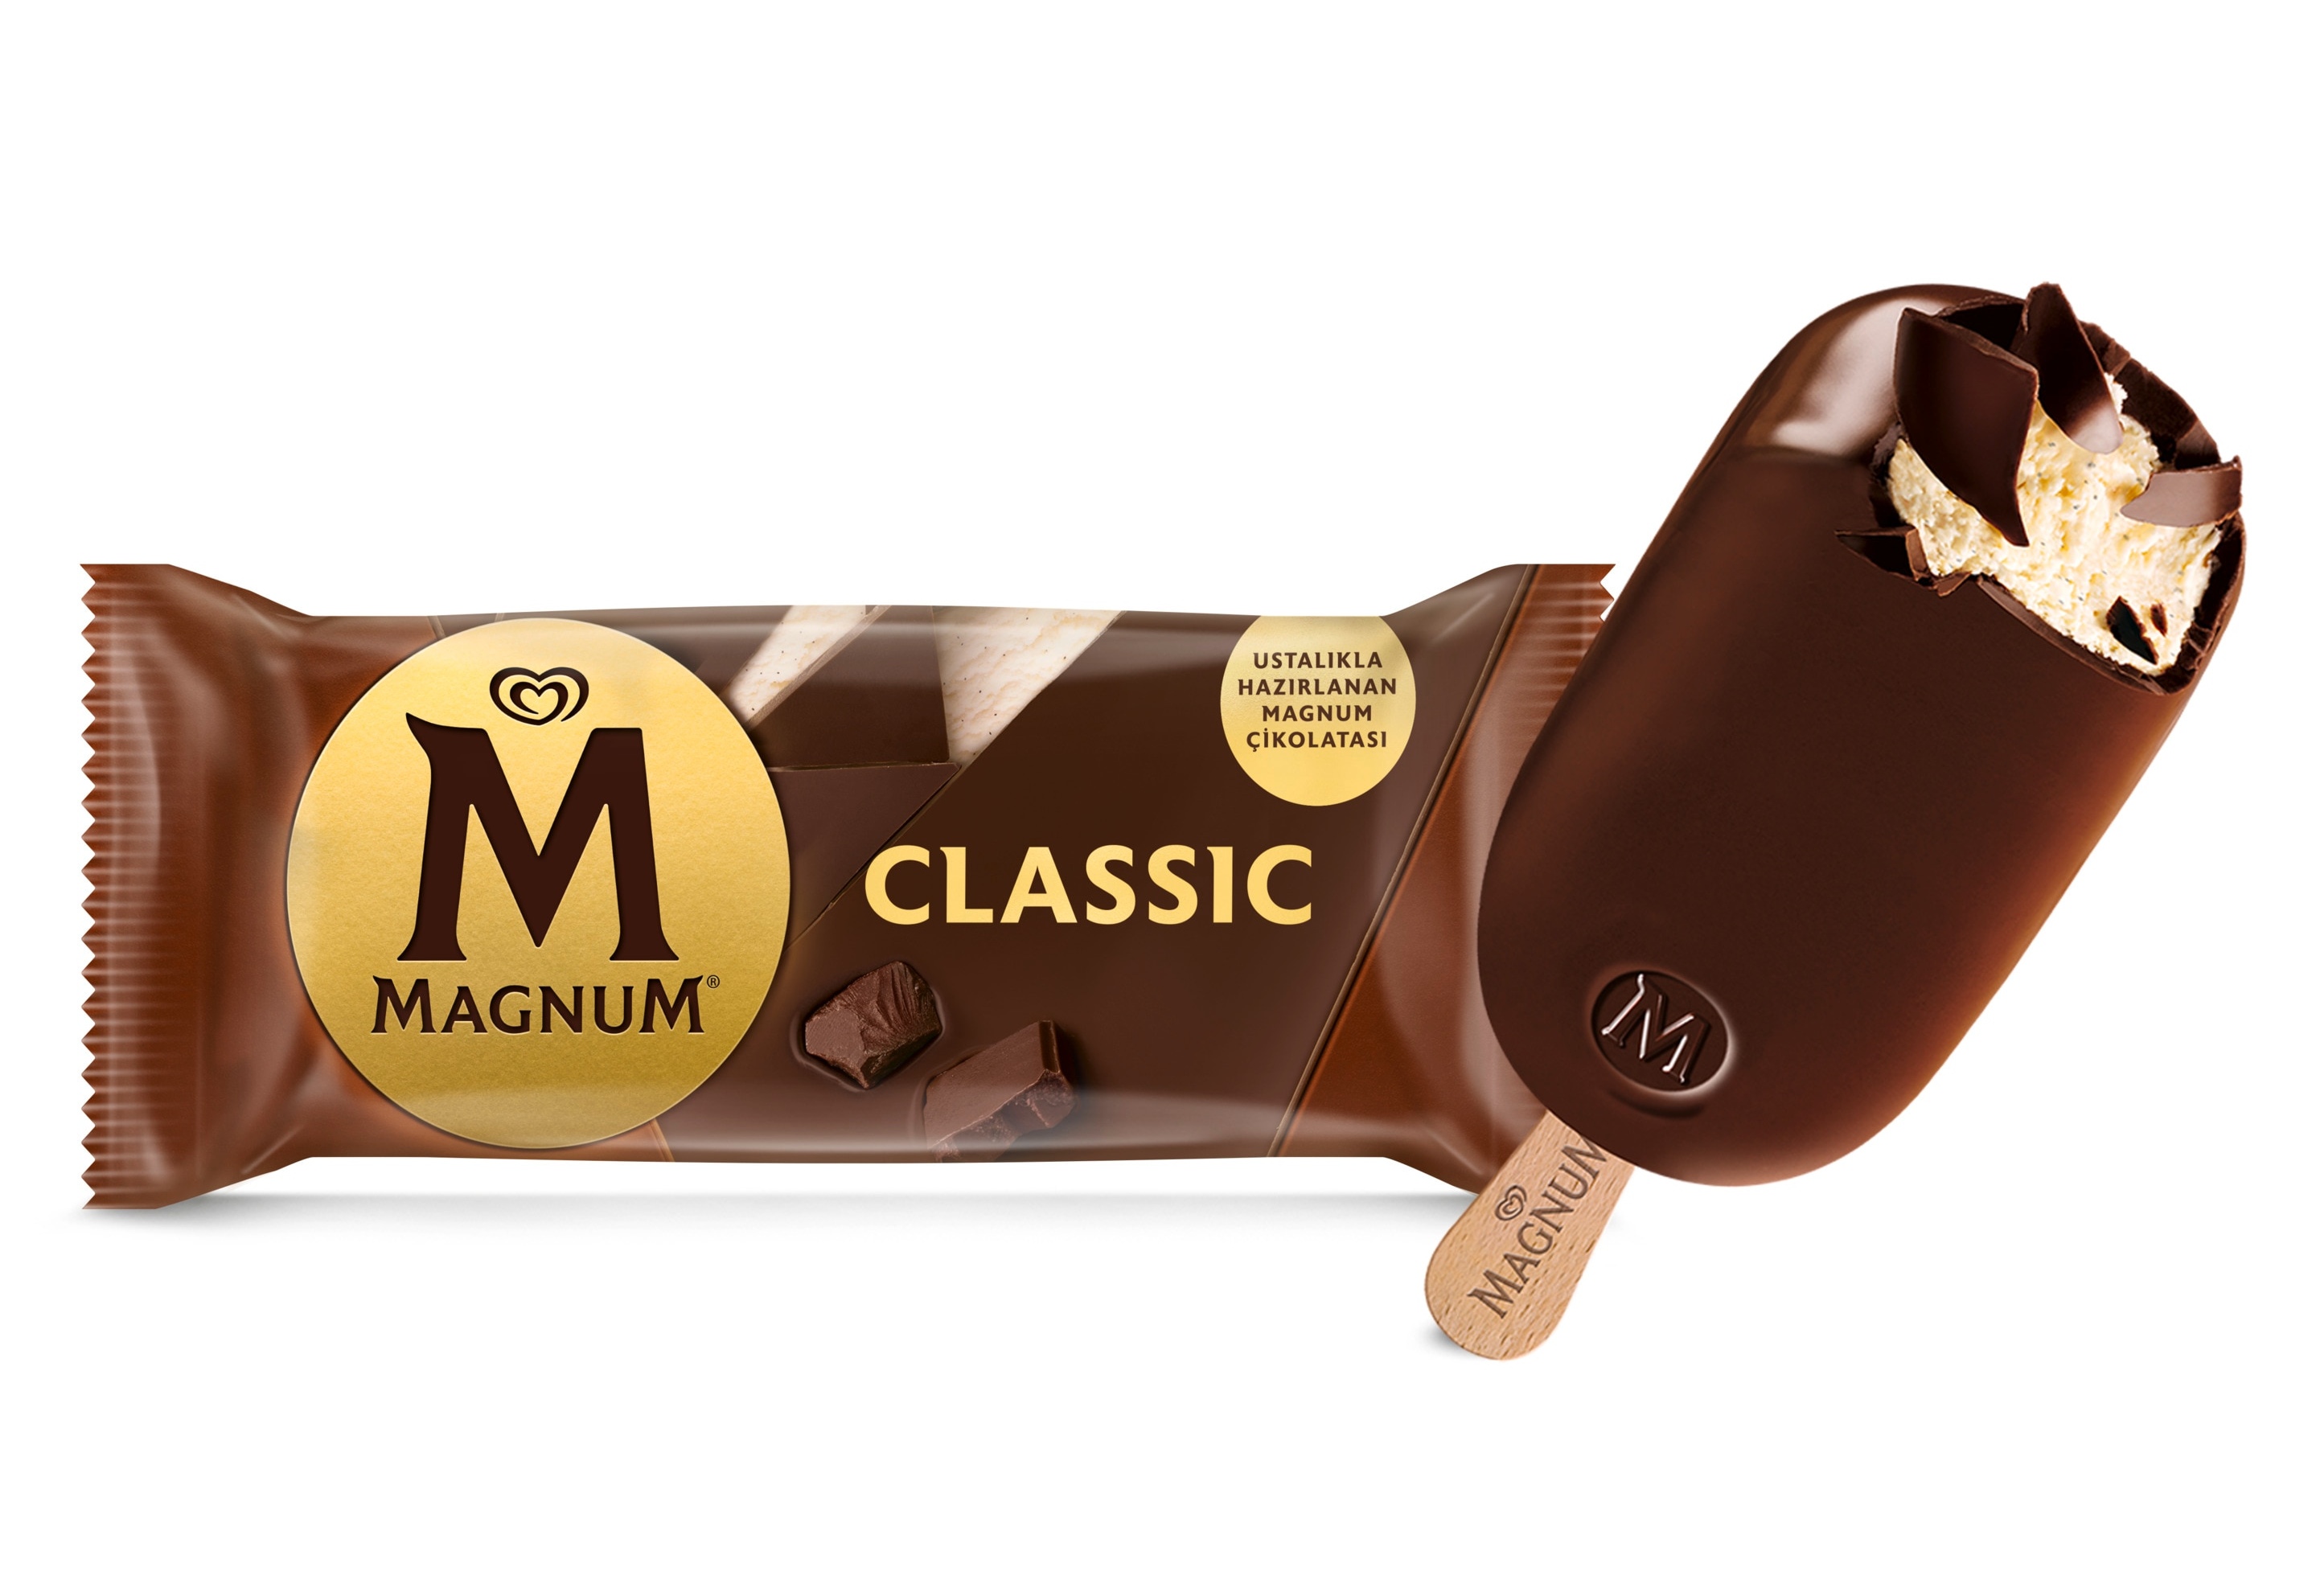 İngiltere: Magnum dondurmalara toplatma kararı… Satın alanlara ‘yemeyin’ uyarısı!…